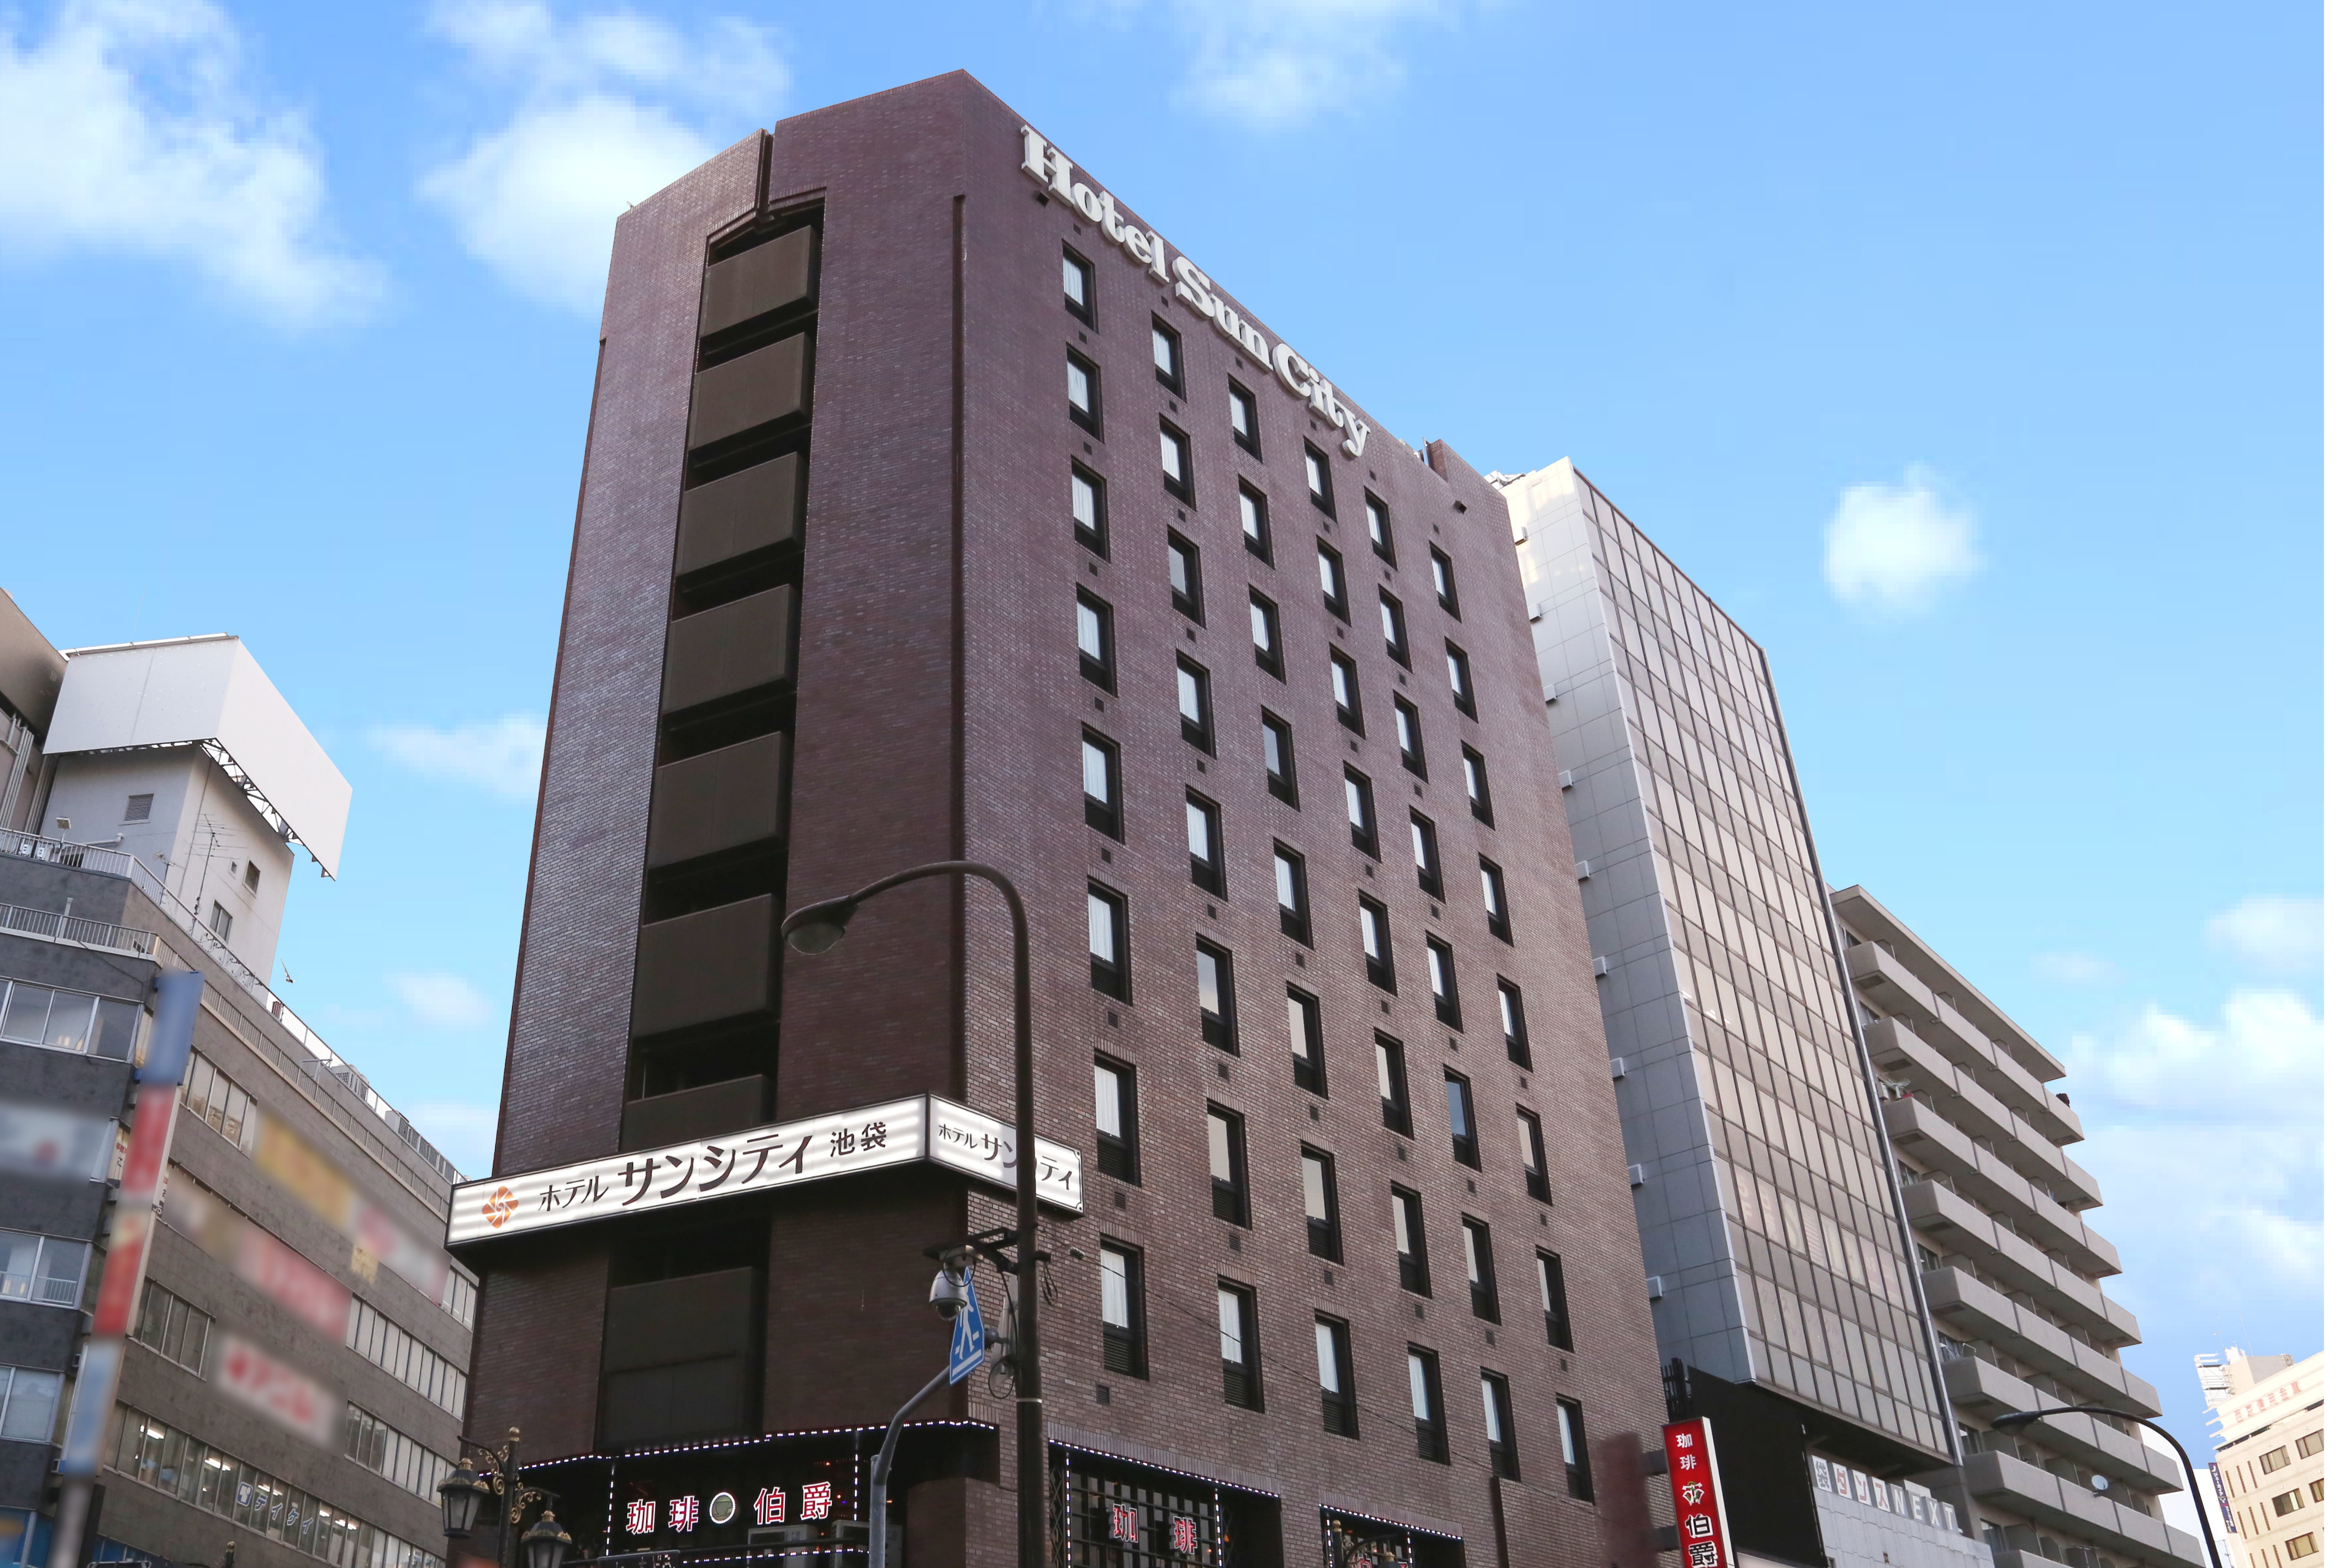 โรงแรมซันซิตี้ อิเคะบุคุโระ